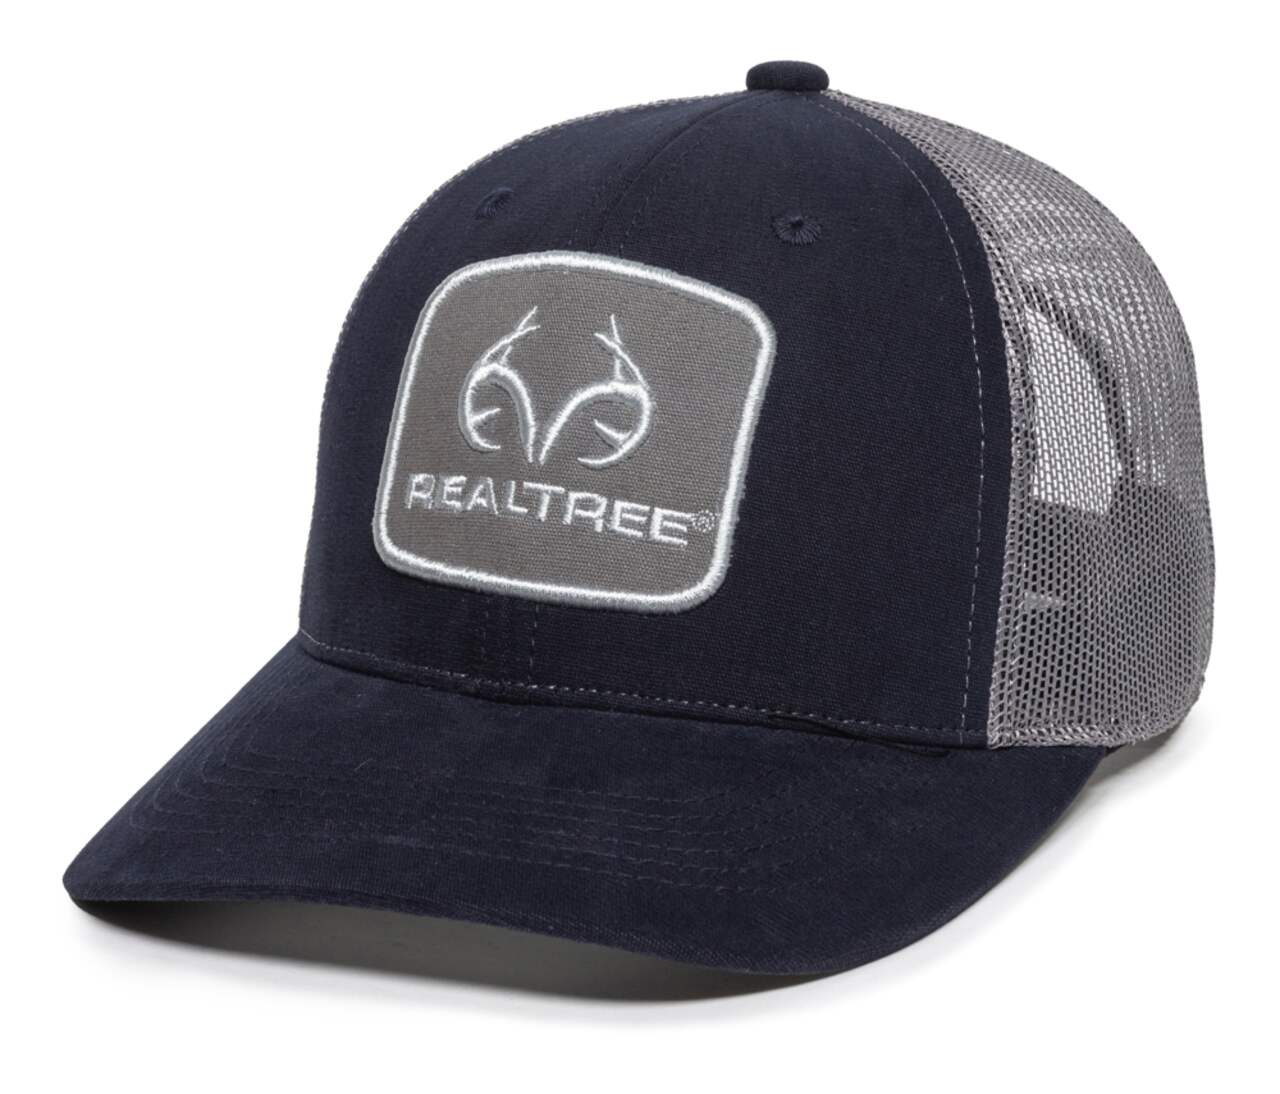 Realtree Hunting Mesh Back Baseball CaP with Adjustable Closure, Navy/ Grey